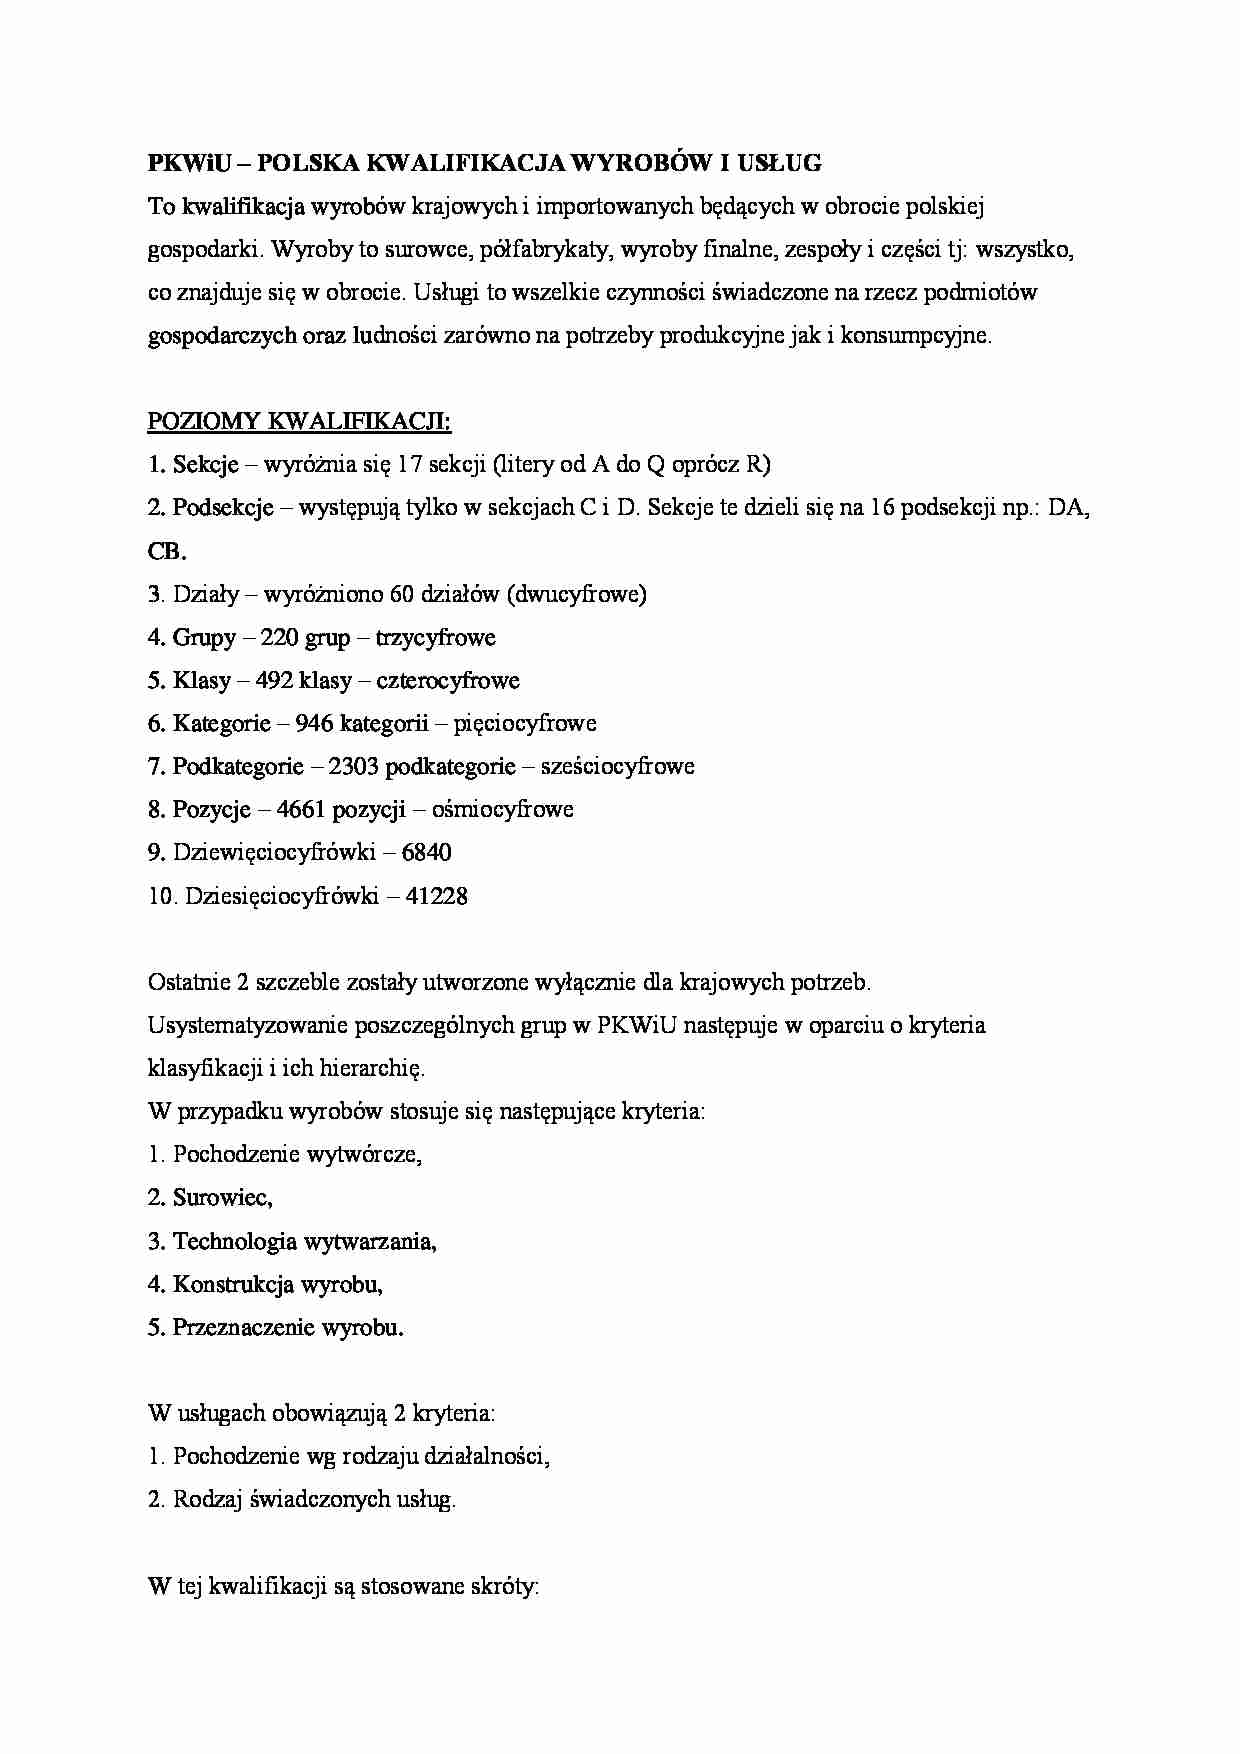 Polska kwalifikacja wyrobów i usług - omówienie - strona 1